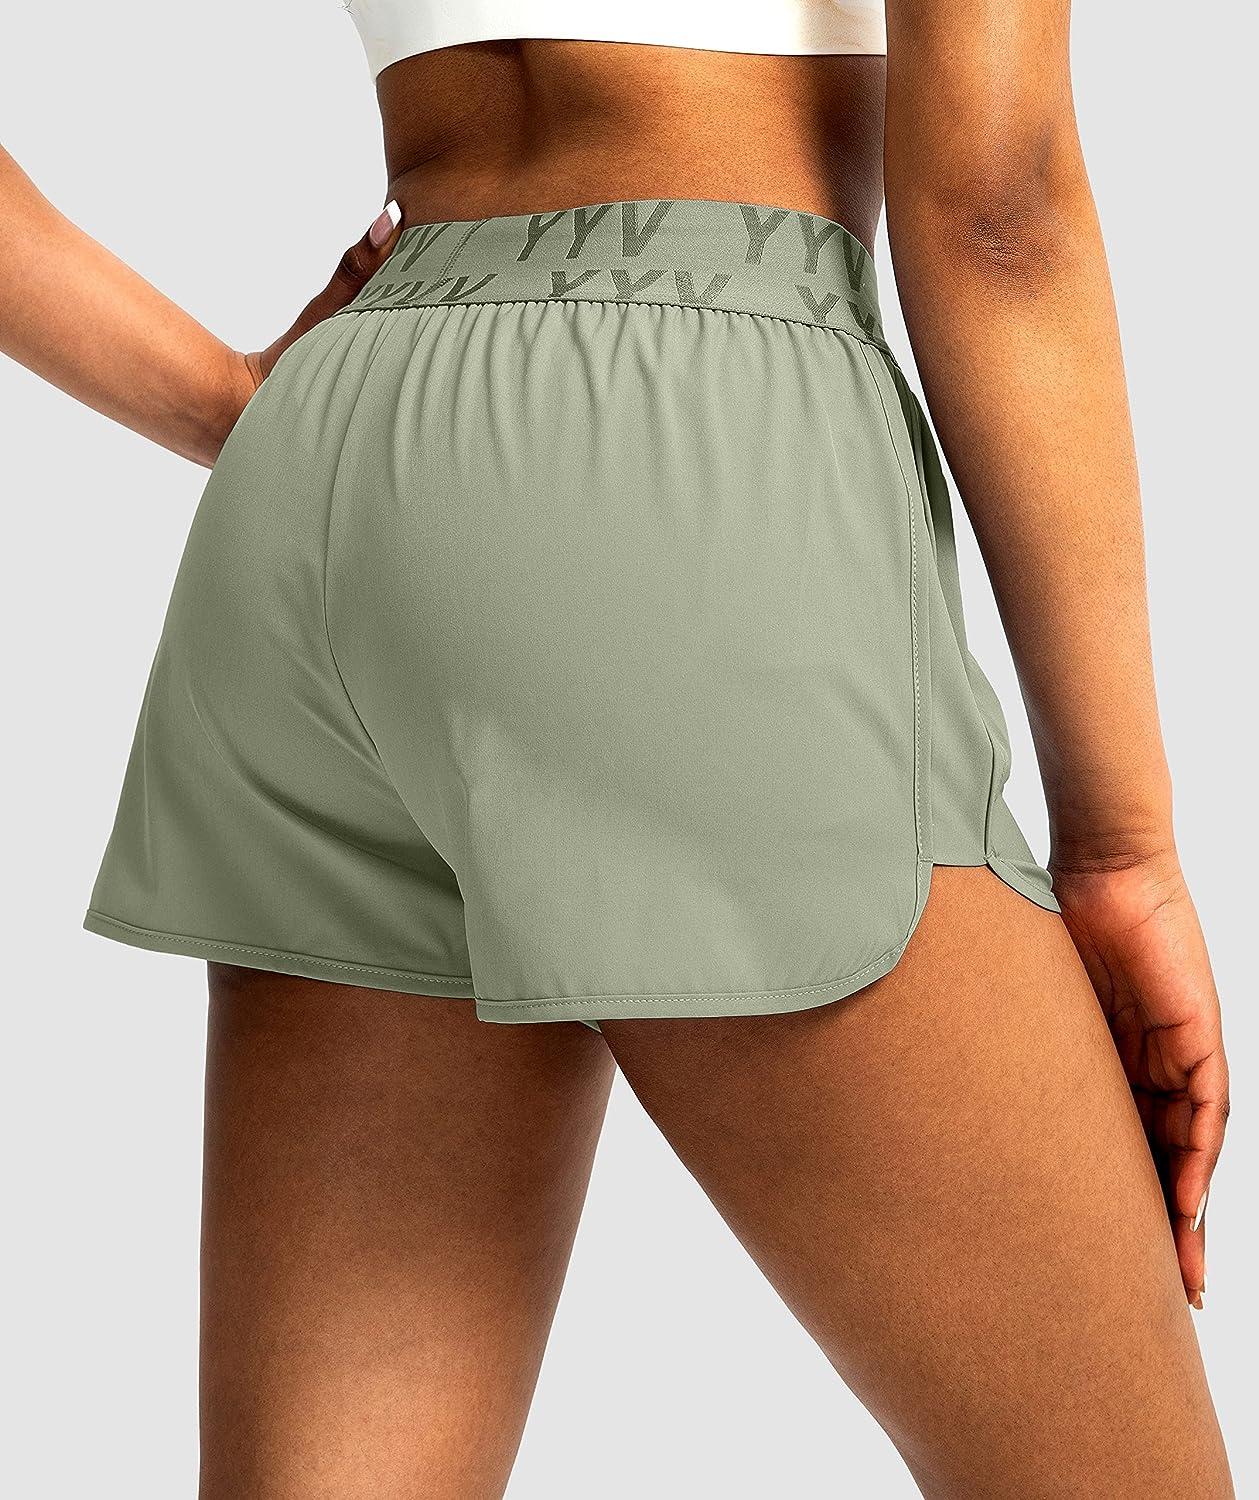 YWDJ Cute Athletic Shorts for Women Casual Summer Elastic Waist